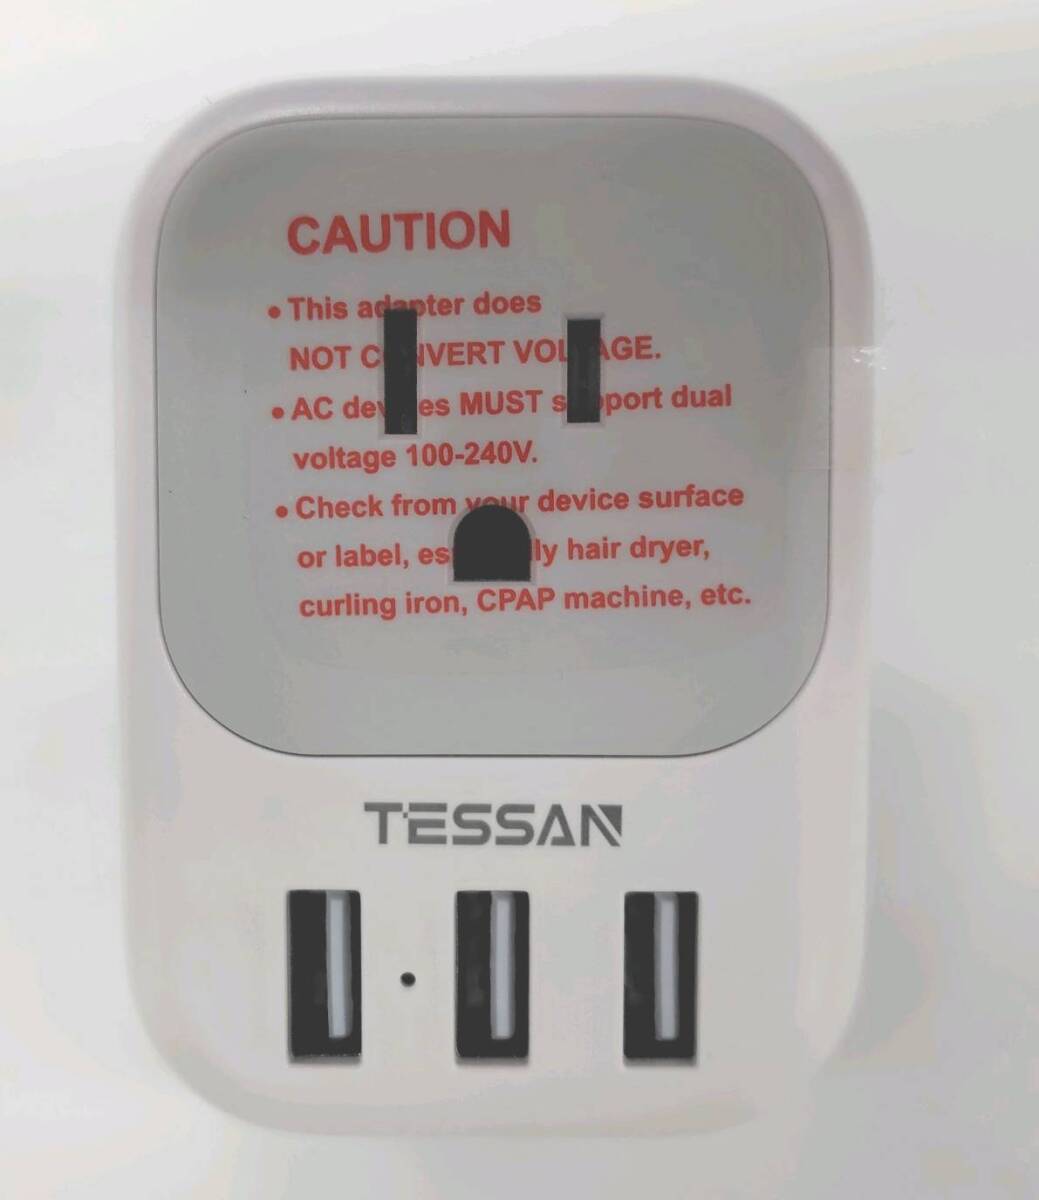 ★【在庫処分価格】TESSAN 変換プラグ Cタイプ 海外旅行用 変換器 変換アダプター TS-161-EU 4個AC差込口 3USBポート付☆T04-484aの画像2